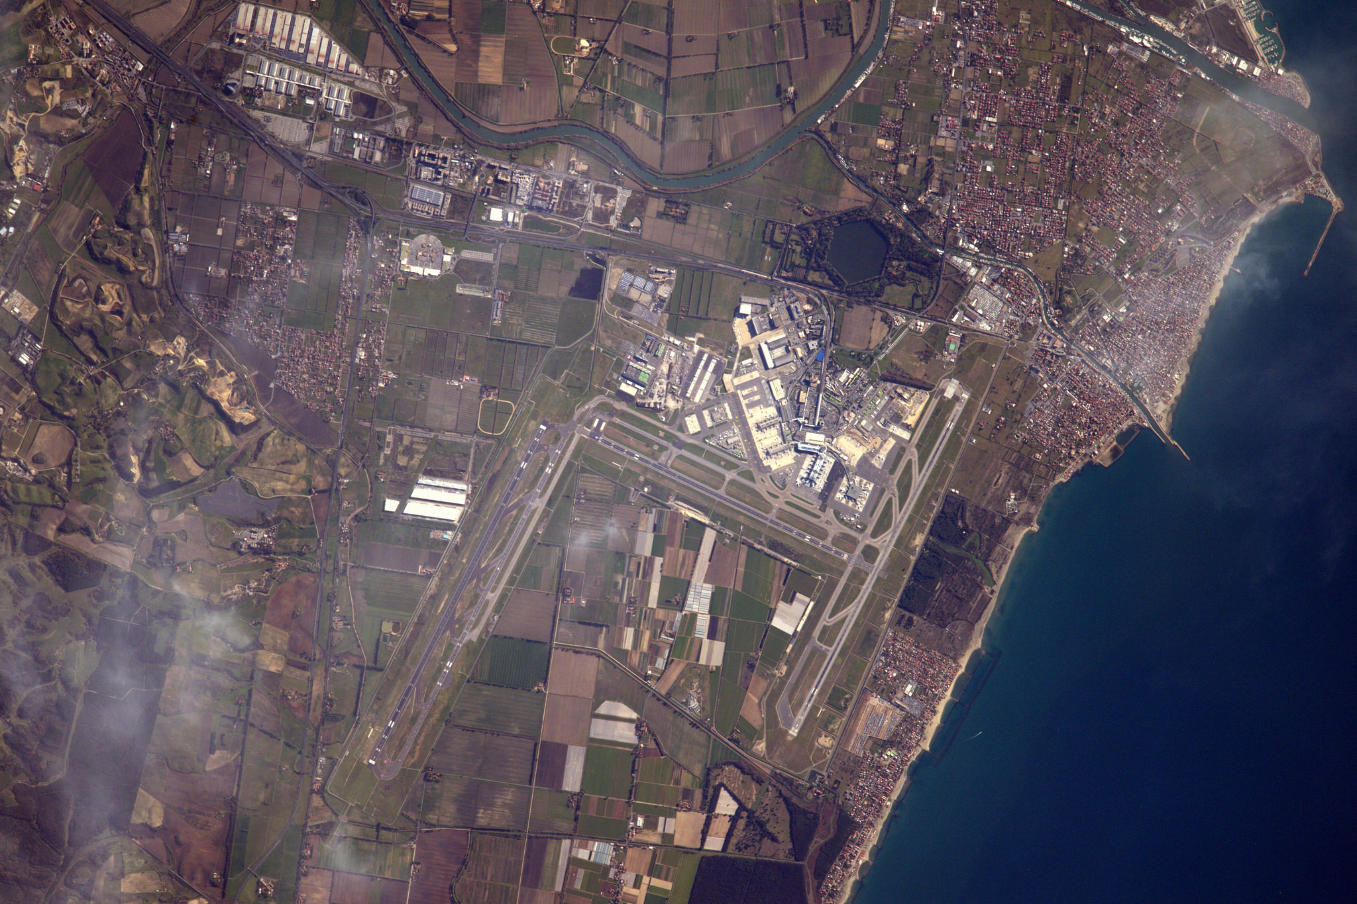 La Terre dans l’oeil de Thomas Pesquet #19 : l'aéroport de Rome